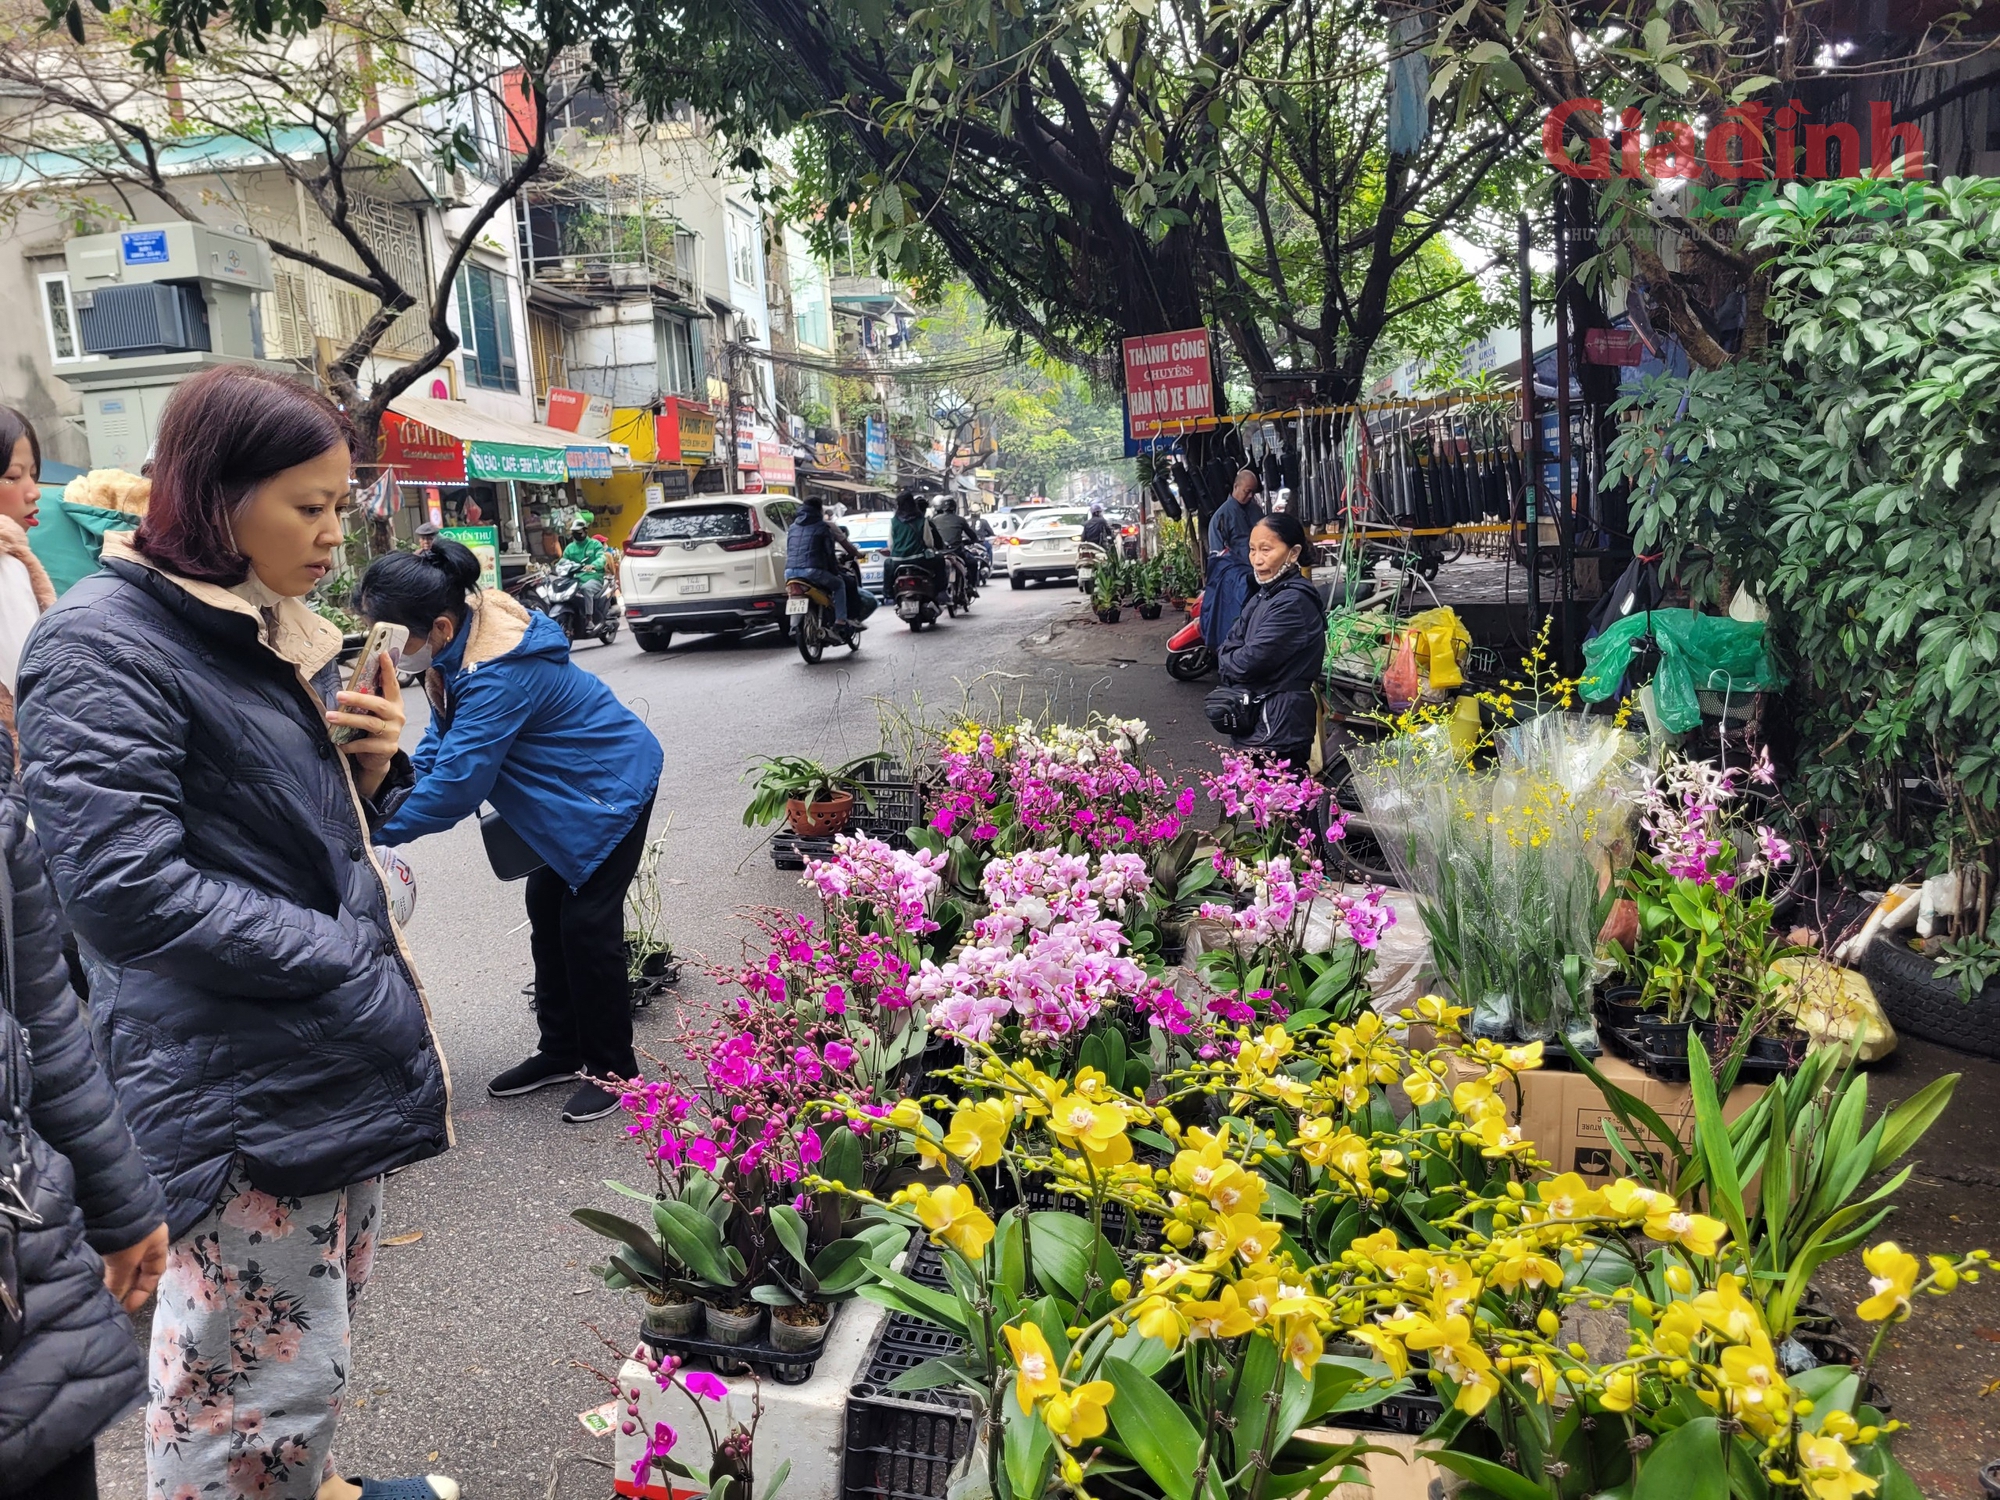 Hoa lan xuống phố ngày cận Tết, giá bán gấp đôi ngày thường, người tiêu dùng Thủ đô vẫn tranh nhau mua - Ảnh 2.